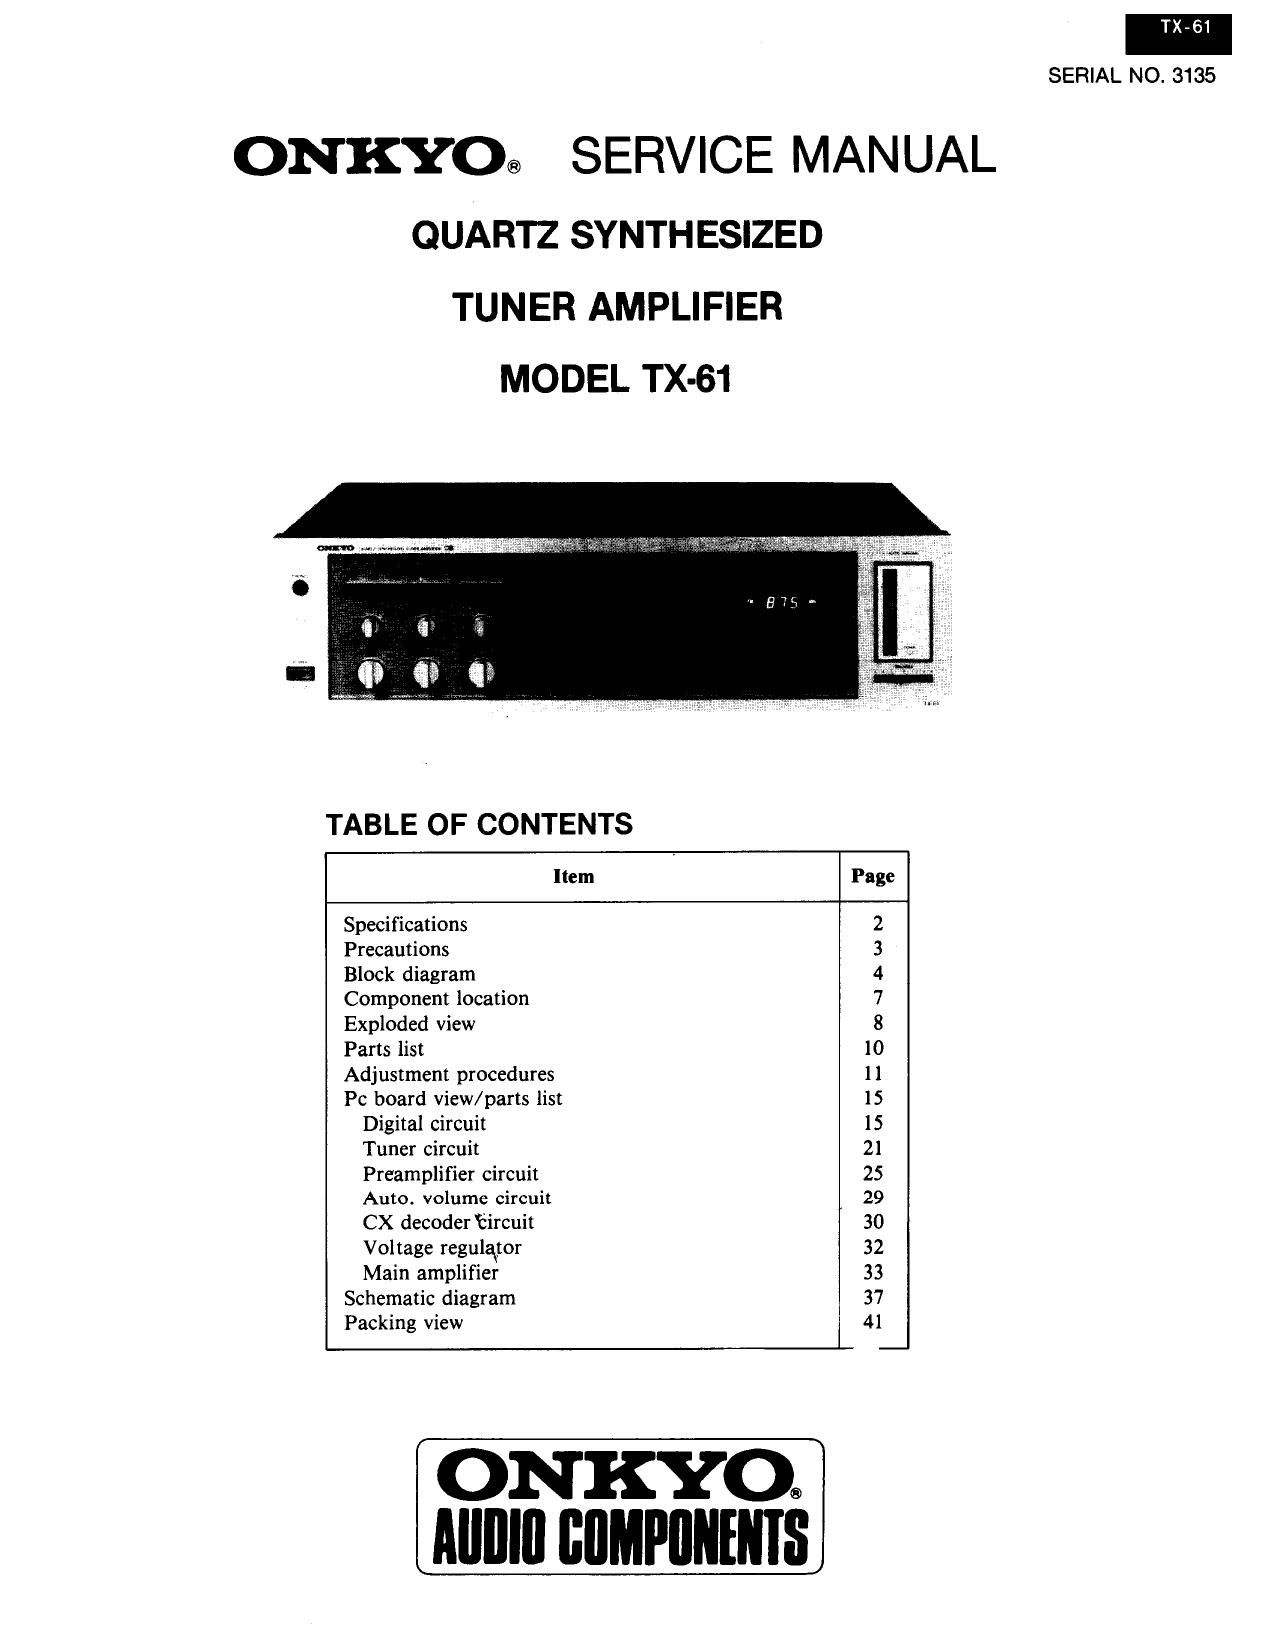 Onkyo TX 61 Service Manual